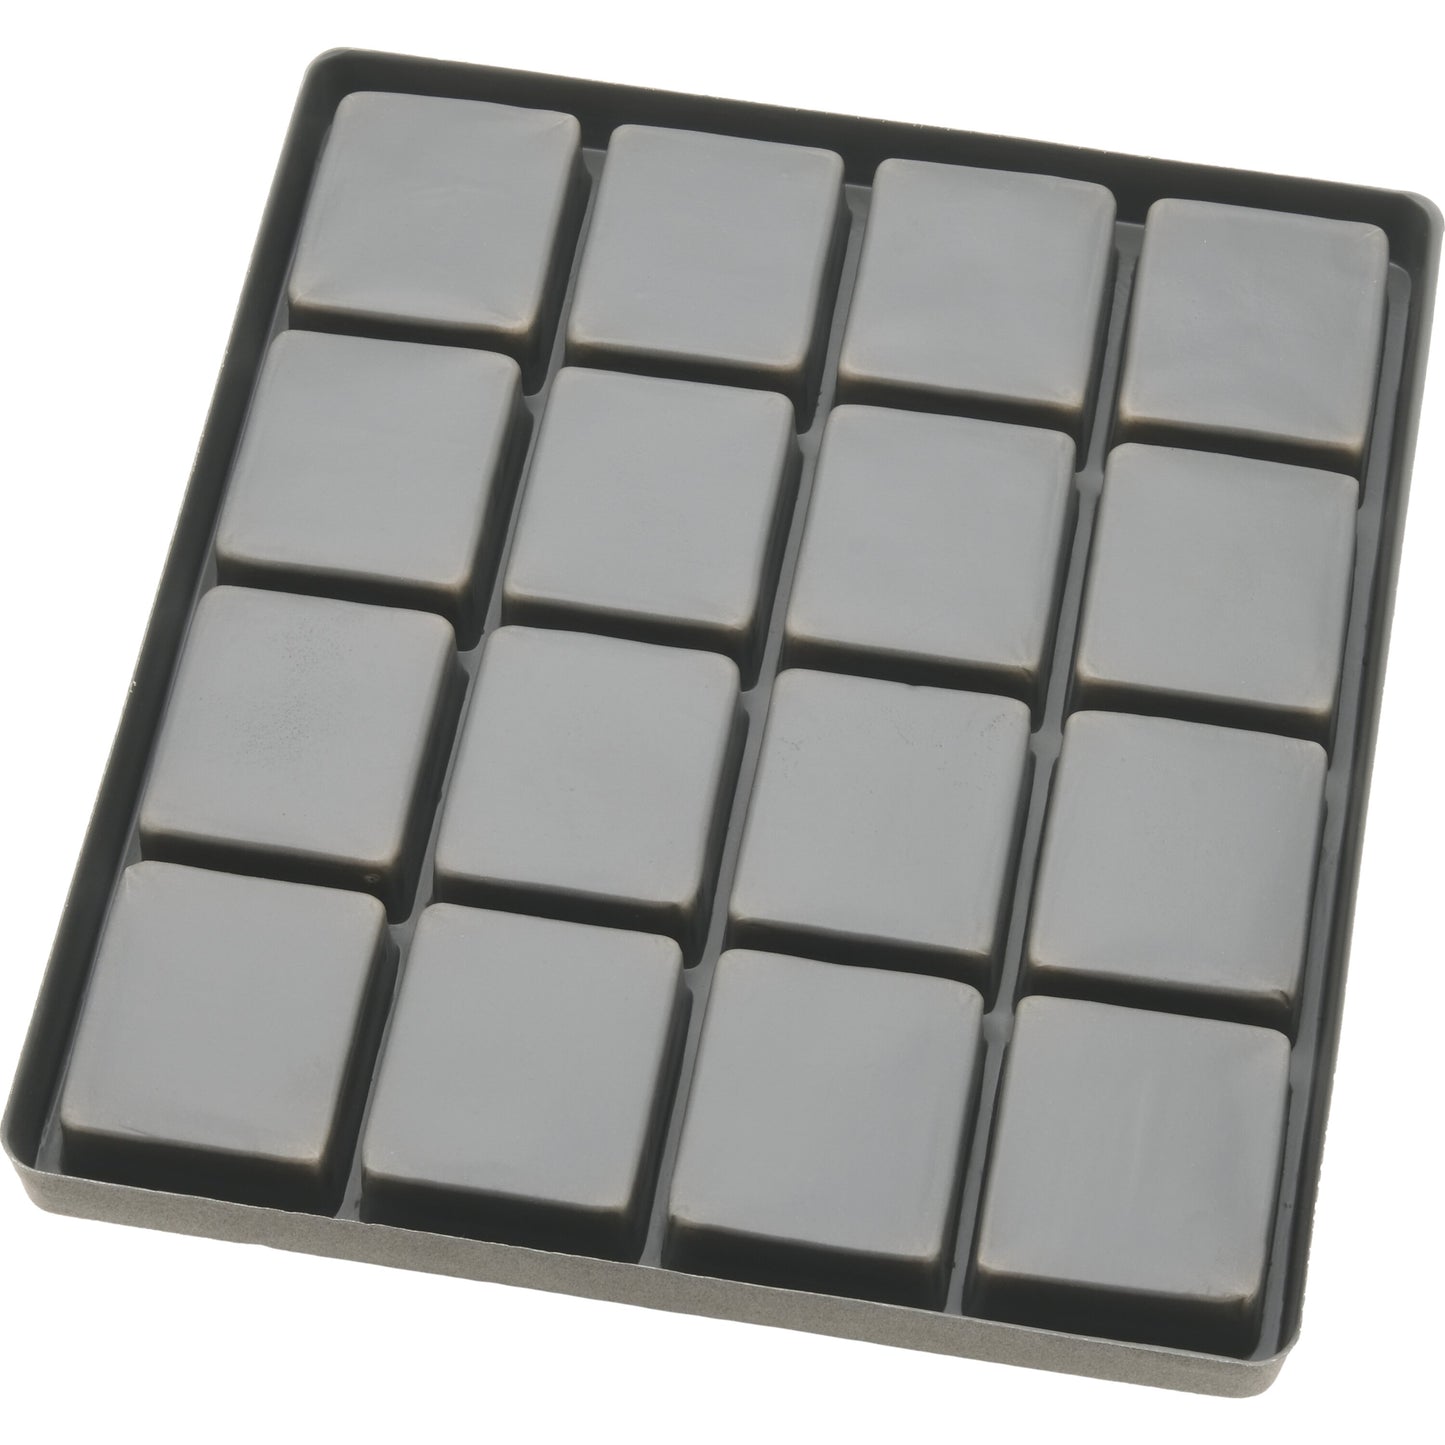 10 Gray Flocked Display Tray Inserts (5) 5 Slot & (5) 16 Slot Trays